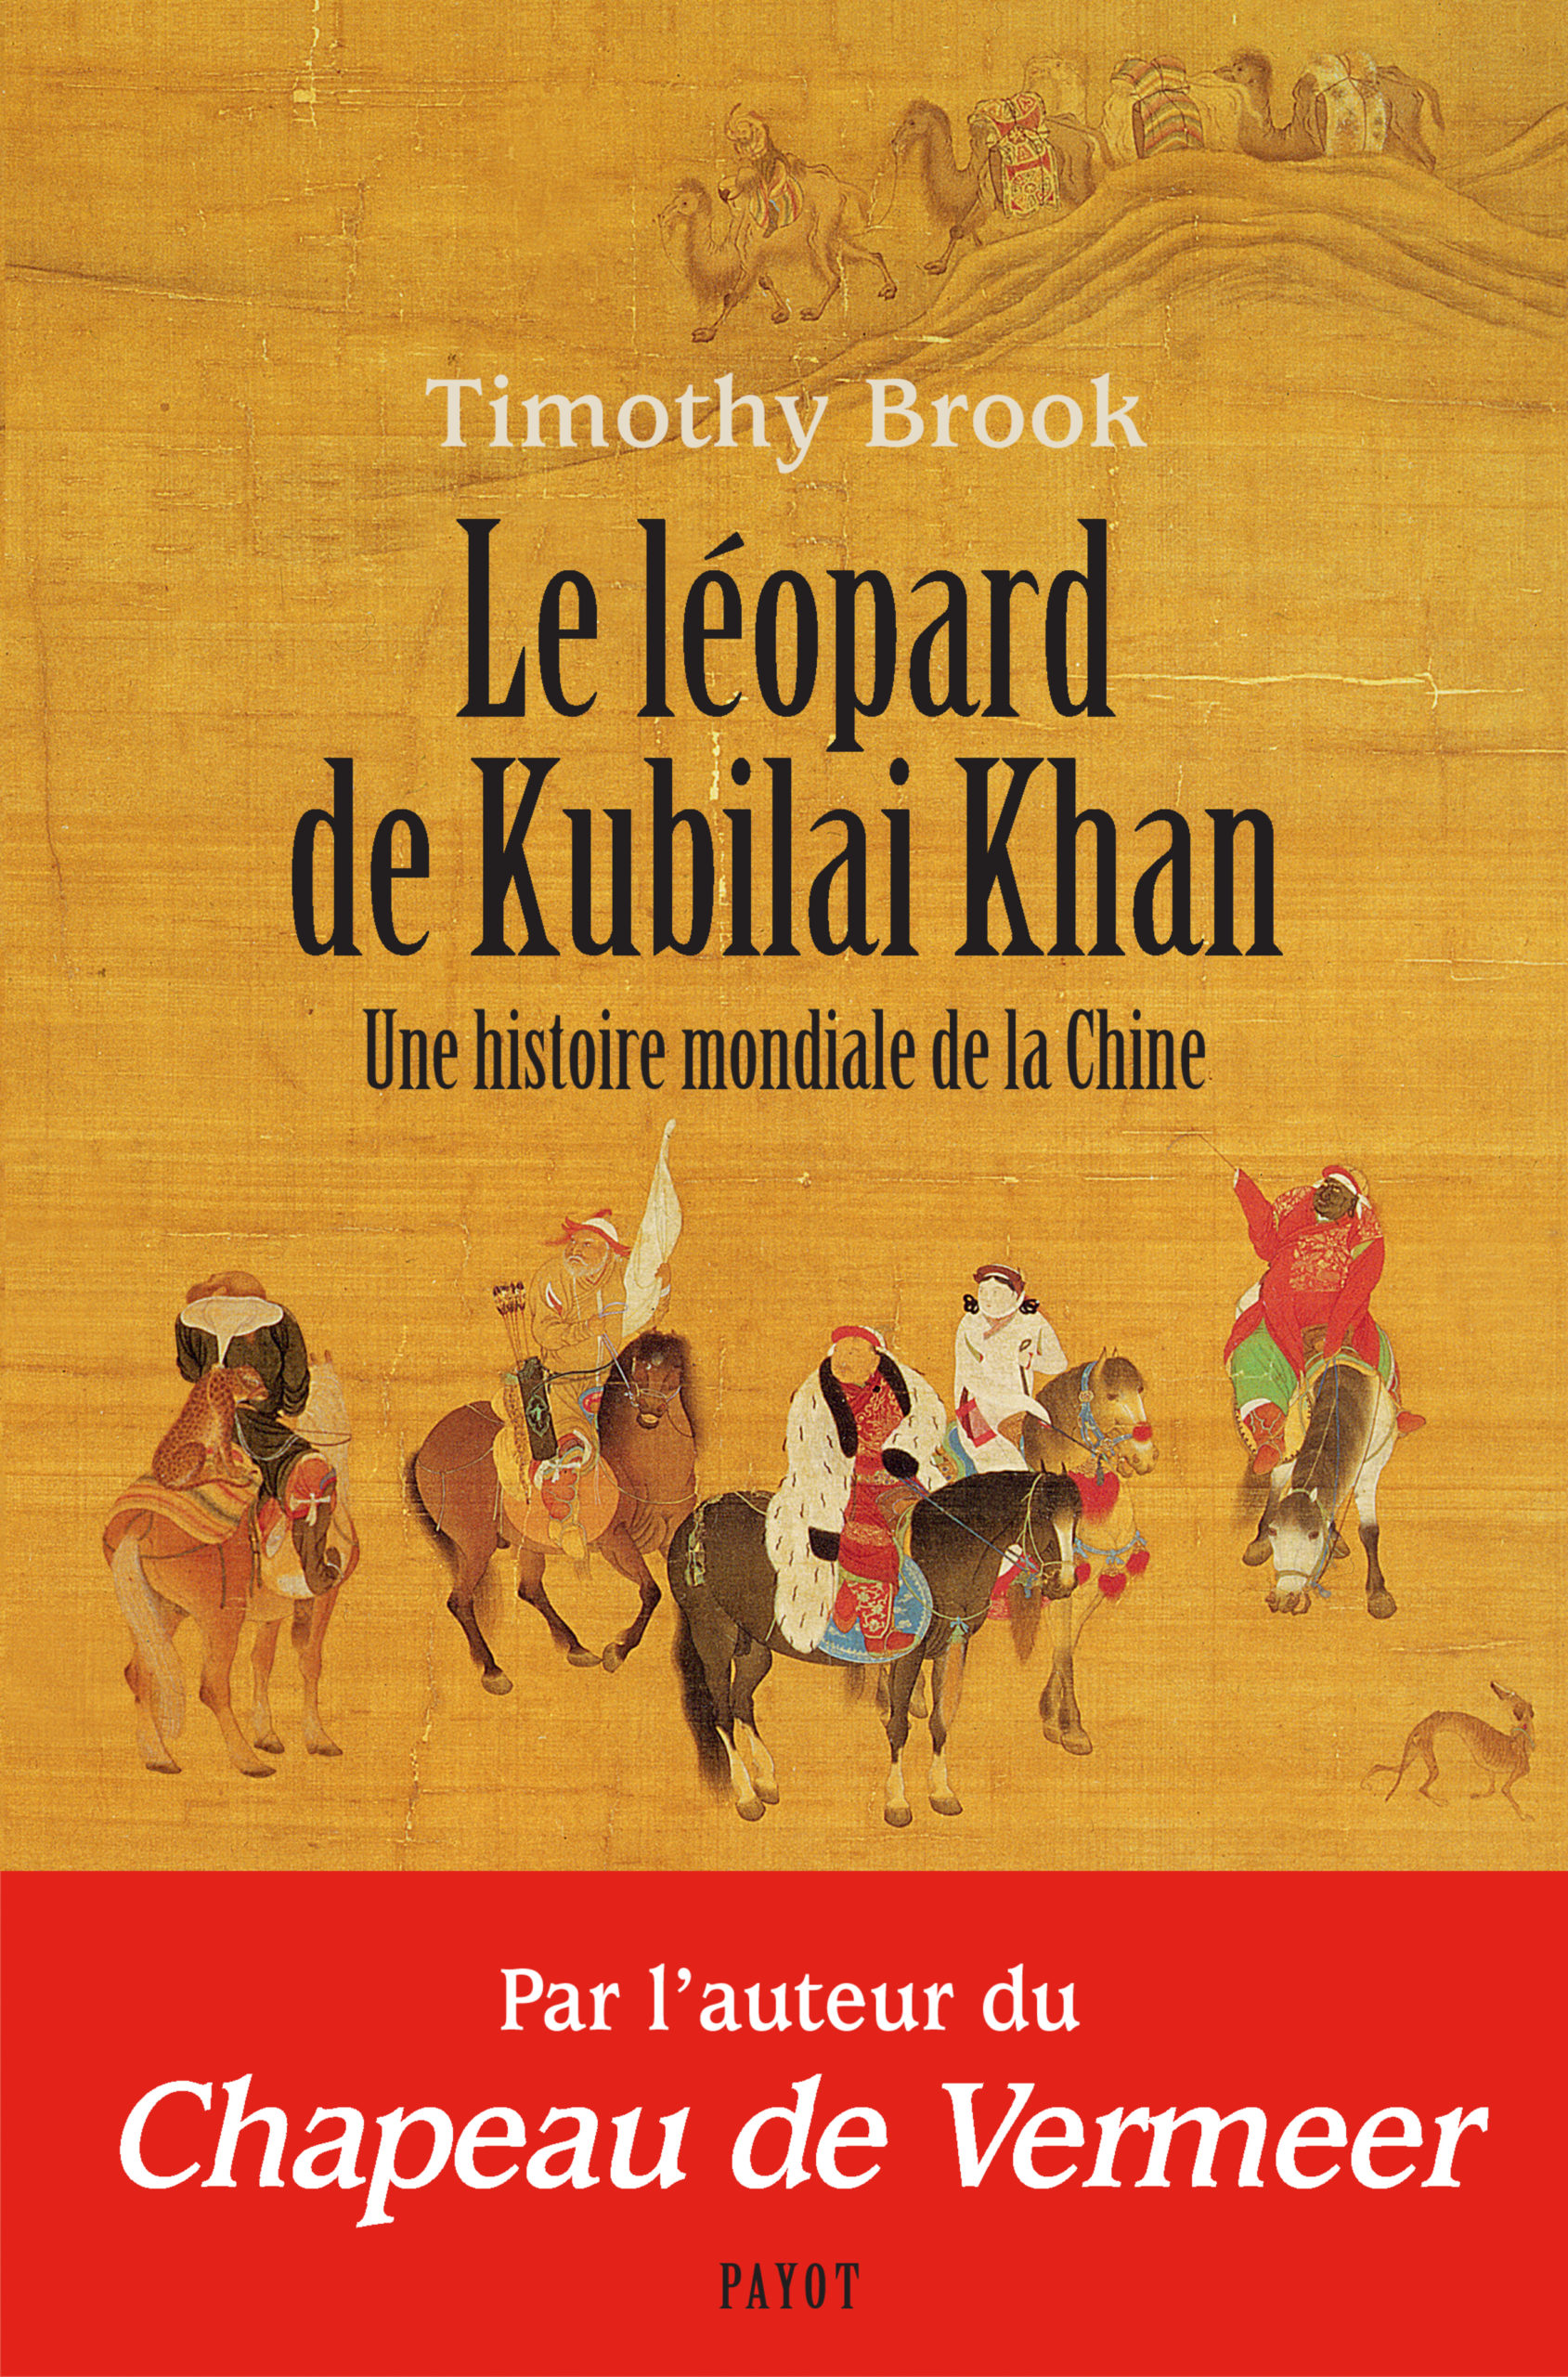 Le léopard de Kubilai Khan, une histoire mondiale de la Chine de Timothy Brook sort chez Payot.